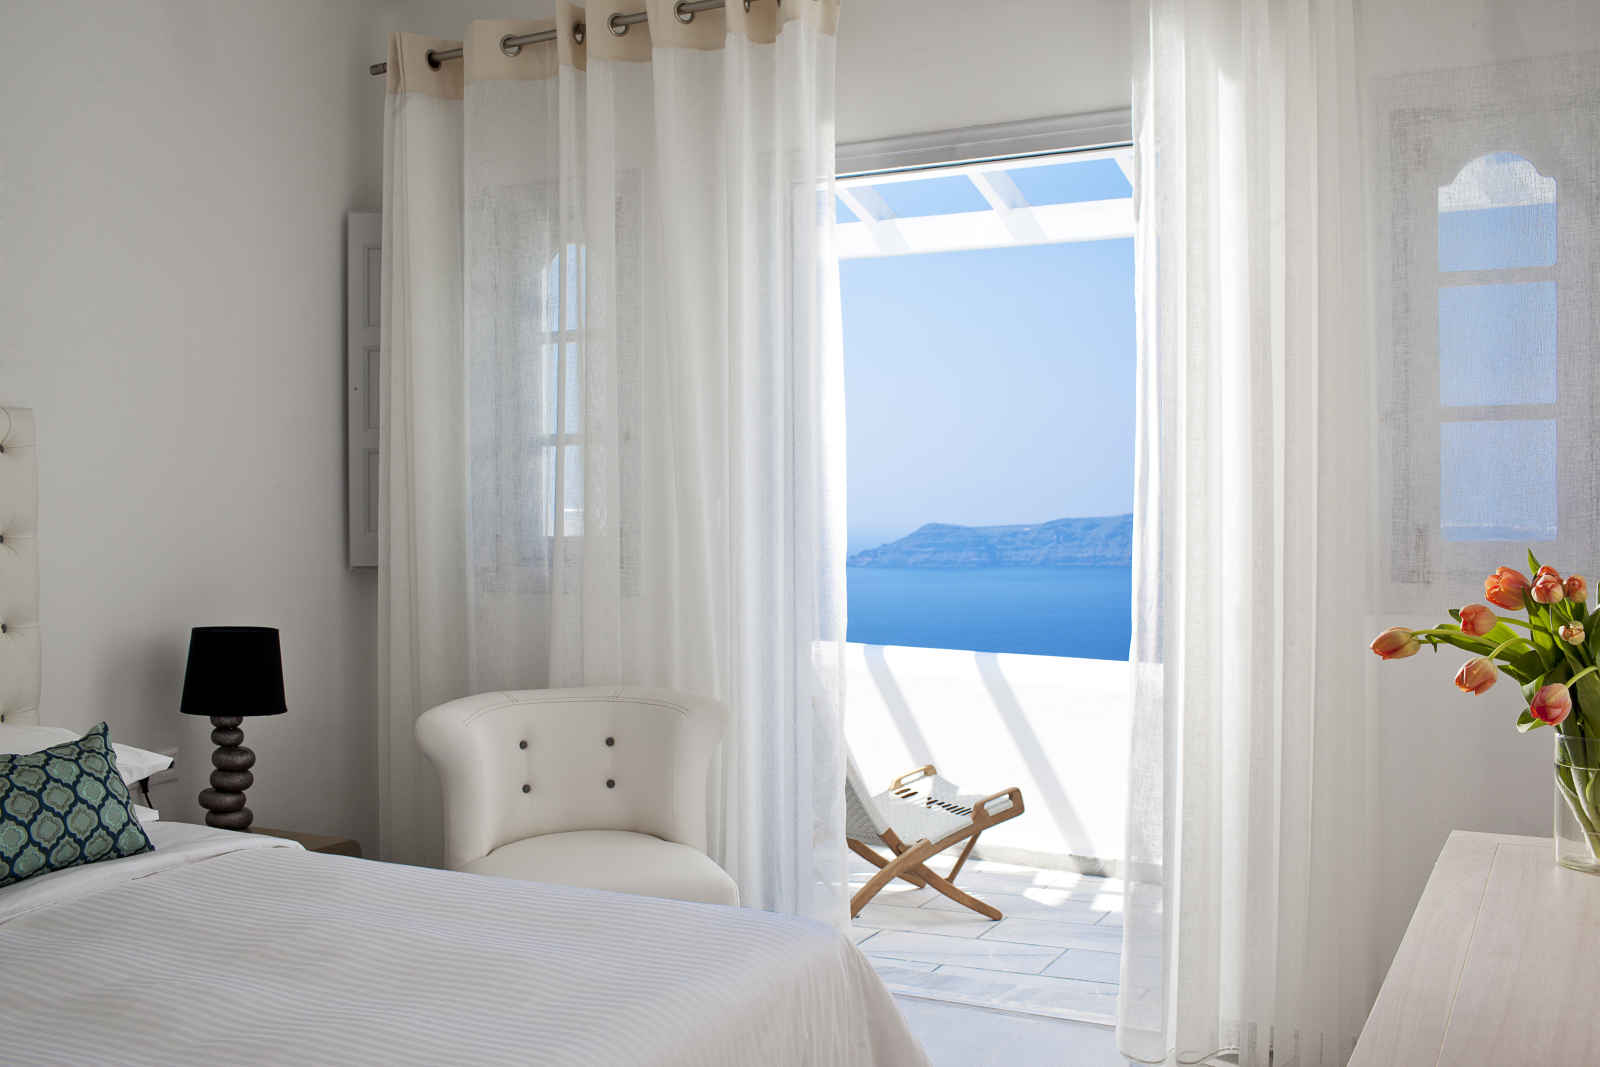 Grèce - Iles grecques - Les Cyclades - Santorin - Hôtel Belvedere Suites 4*